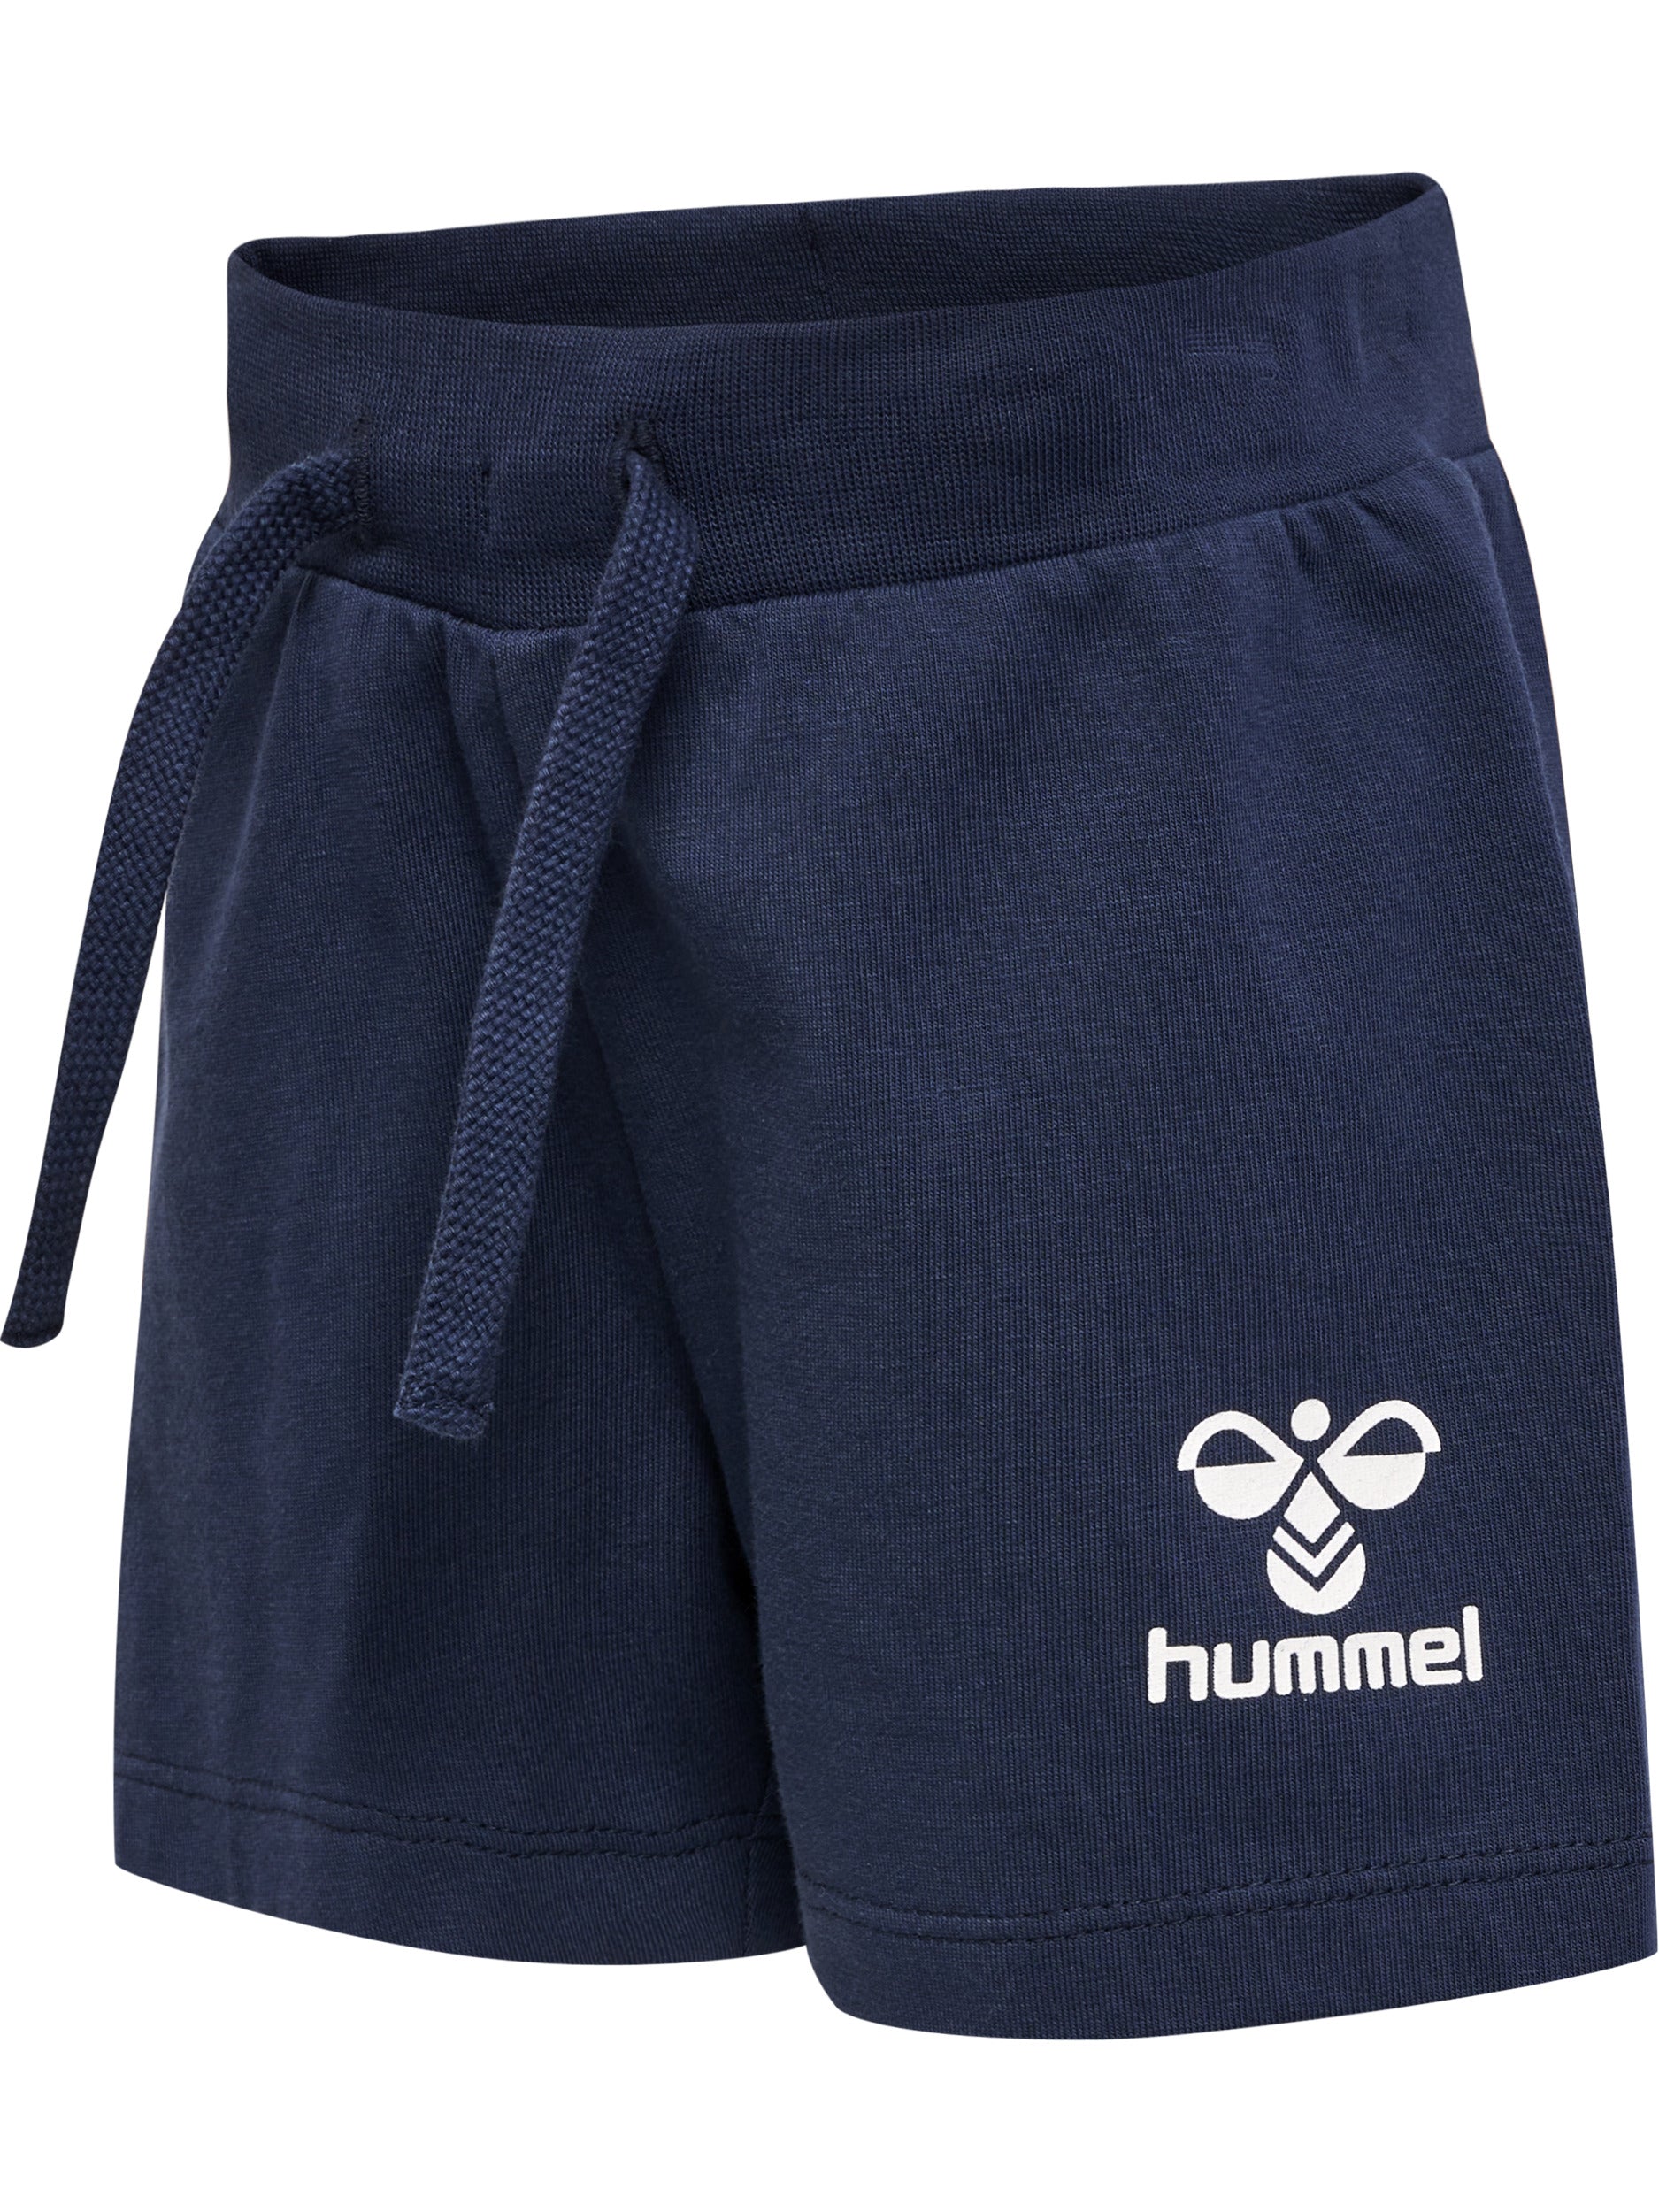 Hummel Shorts Joc